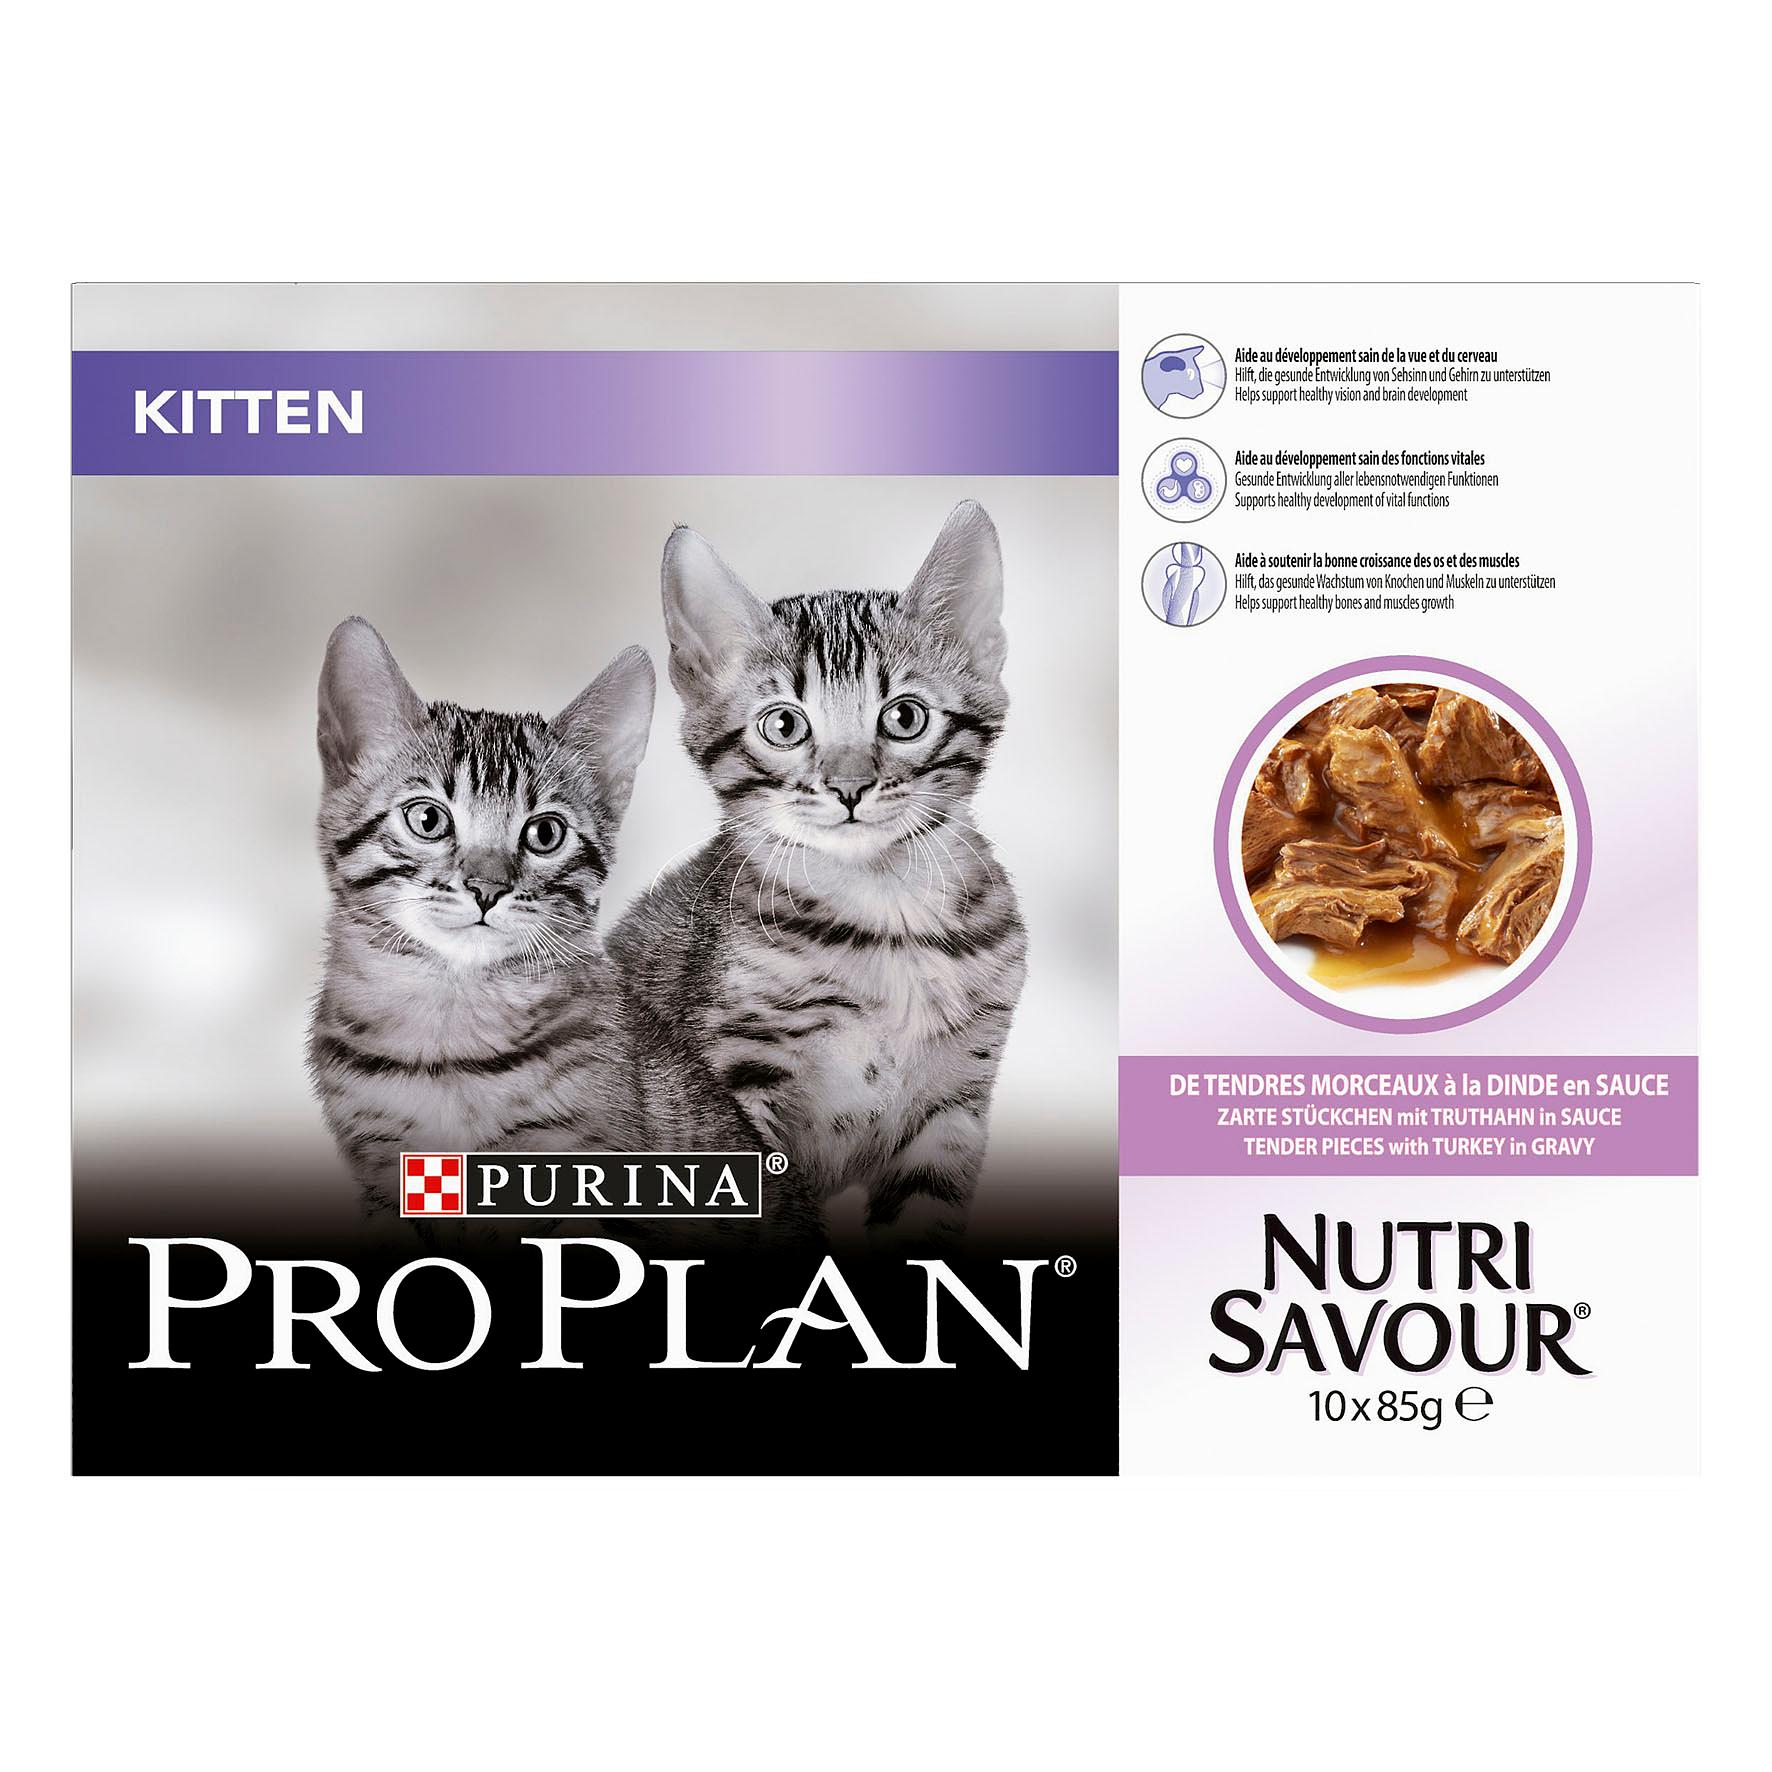 Proplan Cat Kitten Truthahn, 10x85g